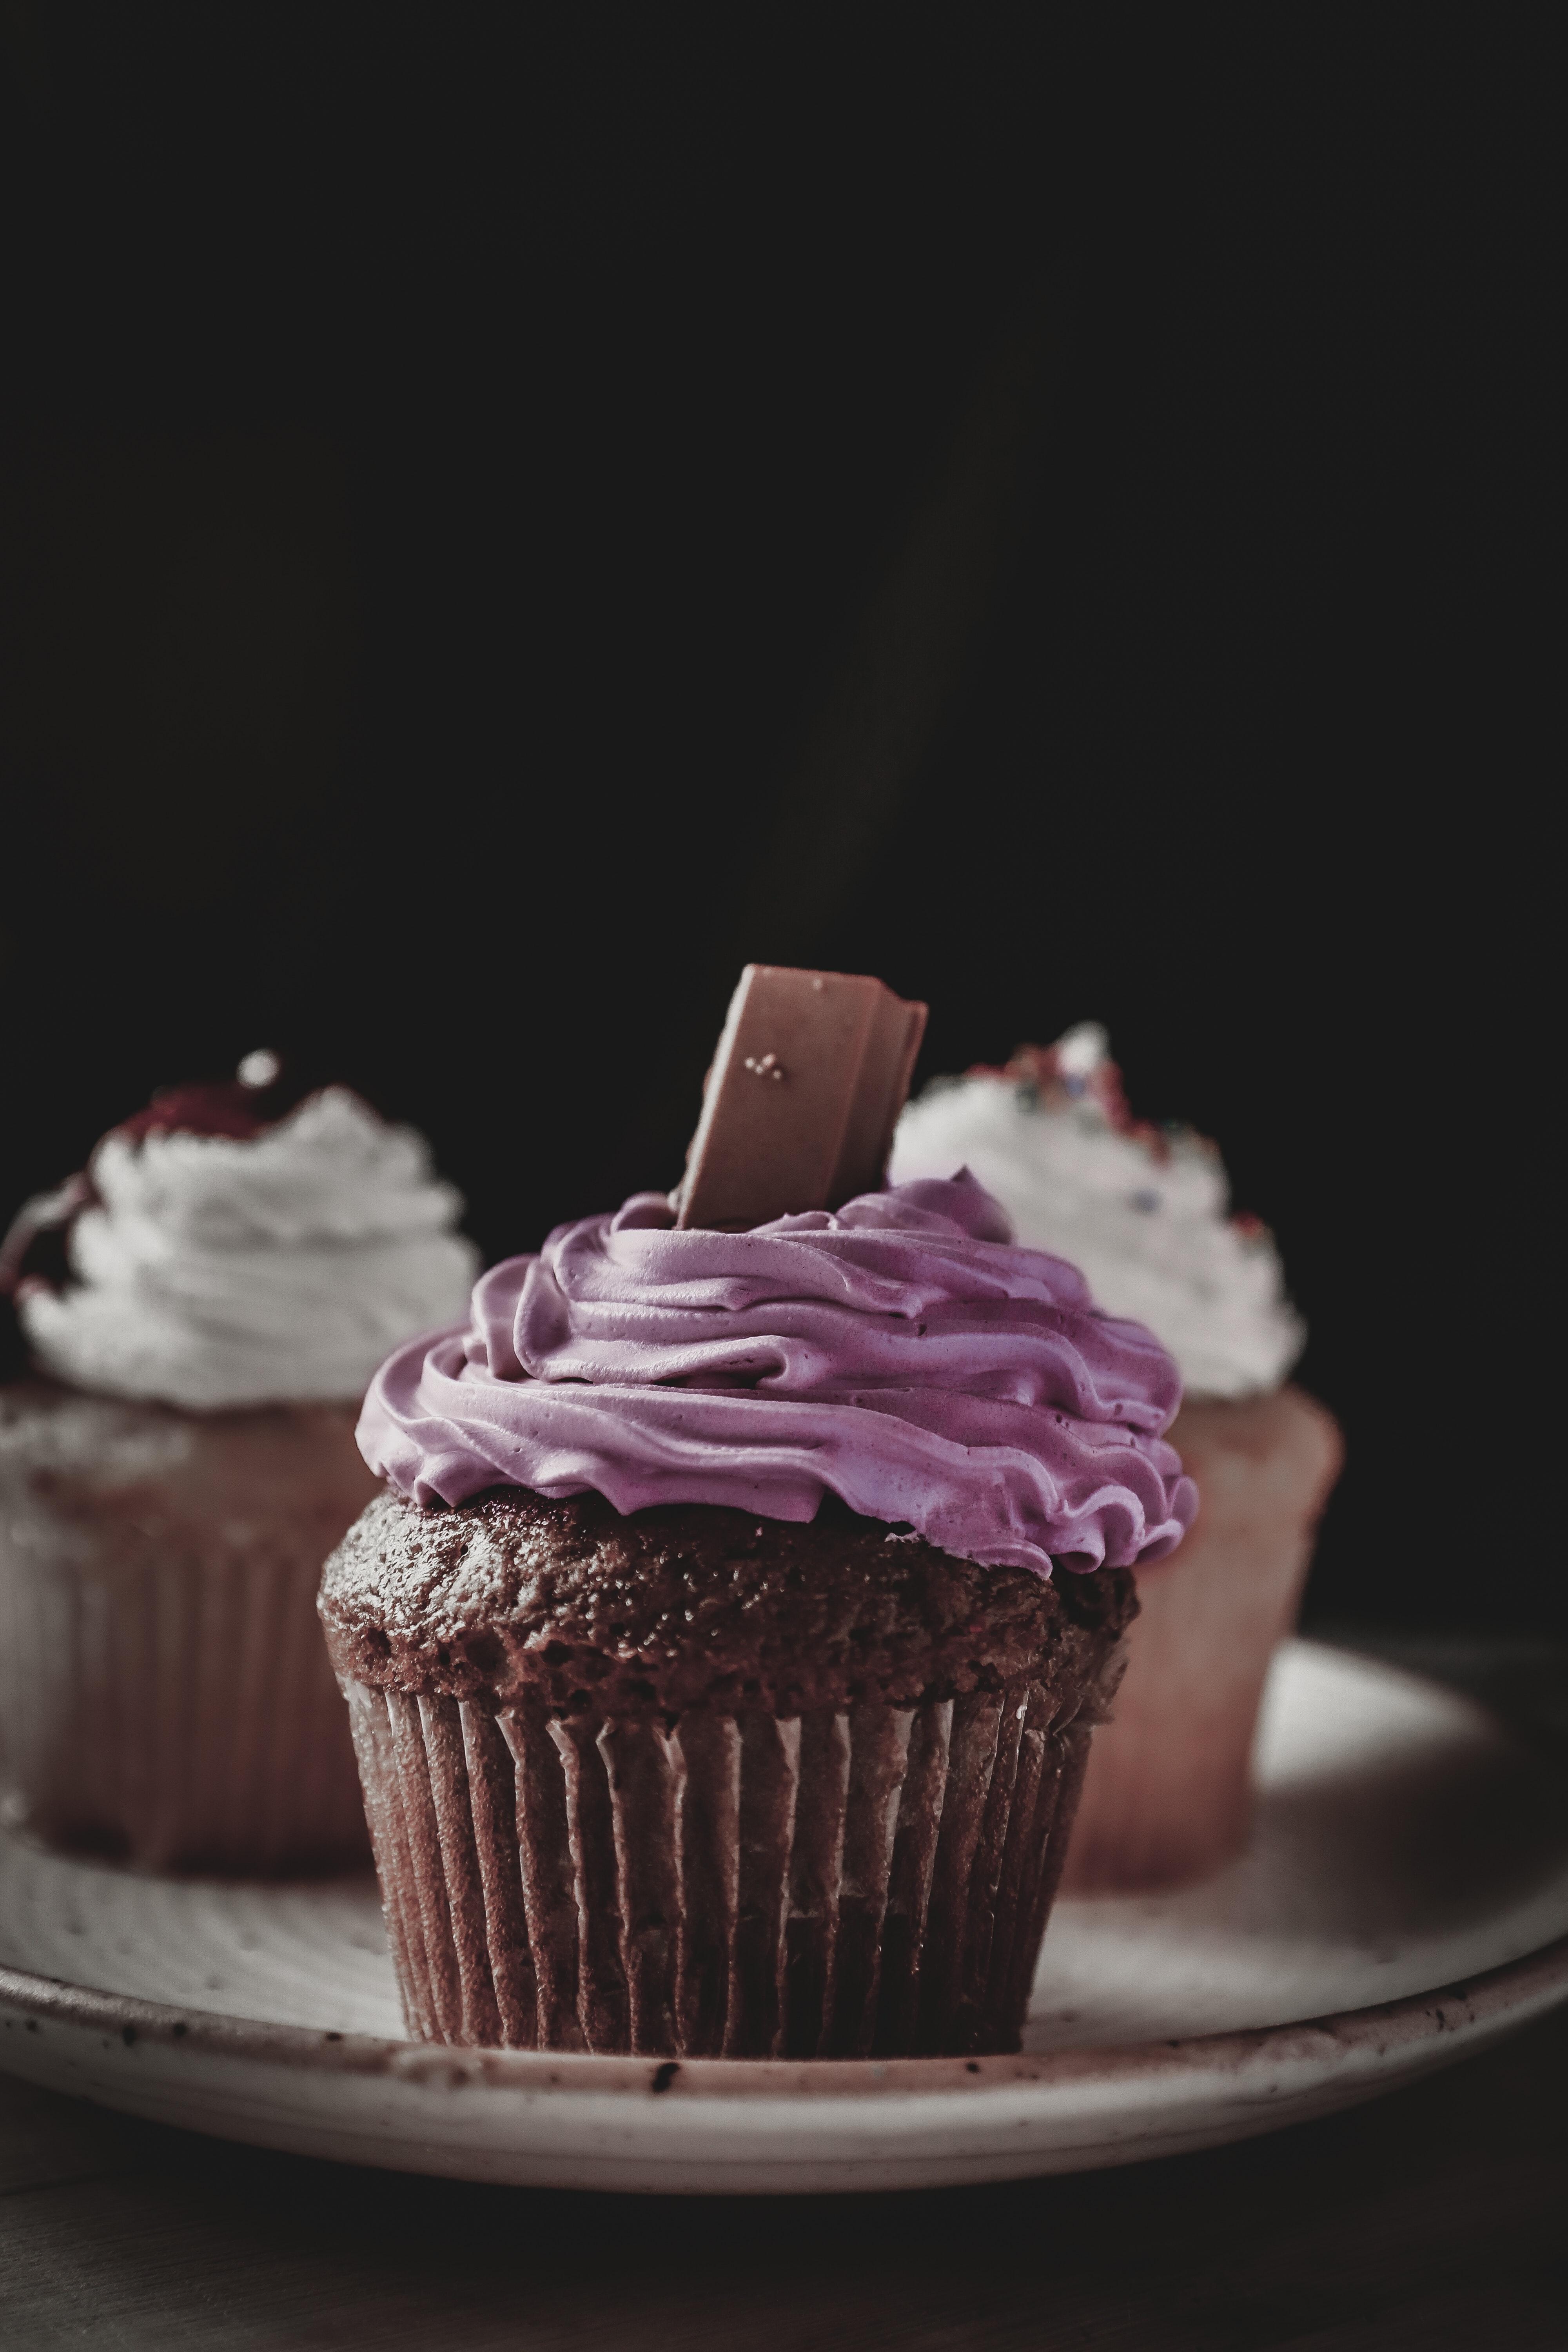 How do you describe cupcakes? 